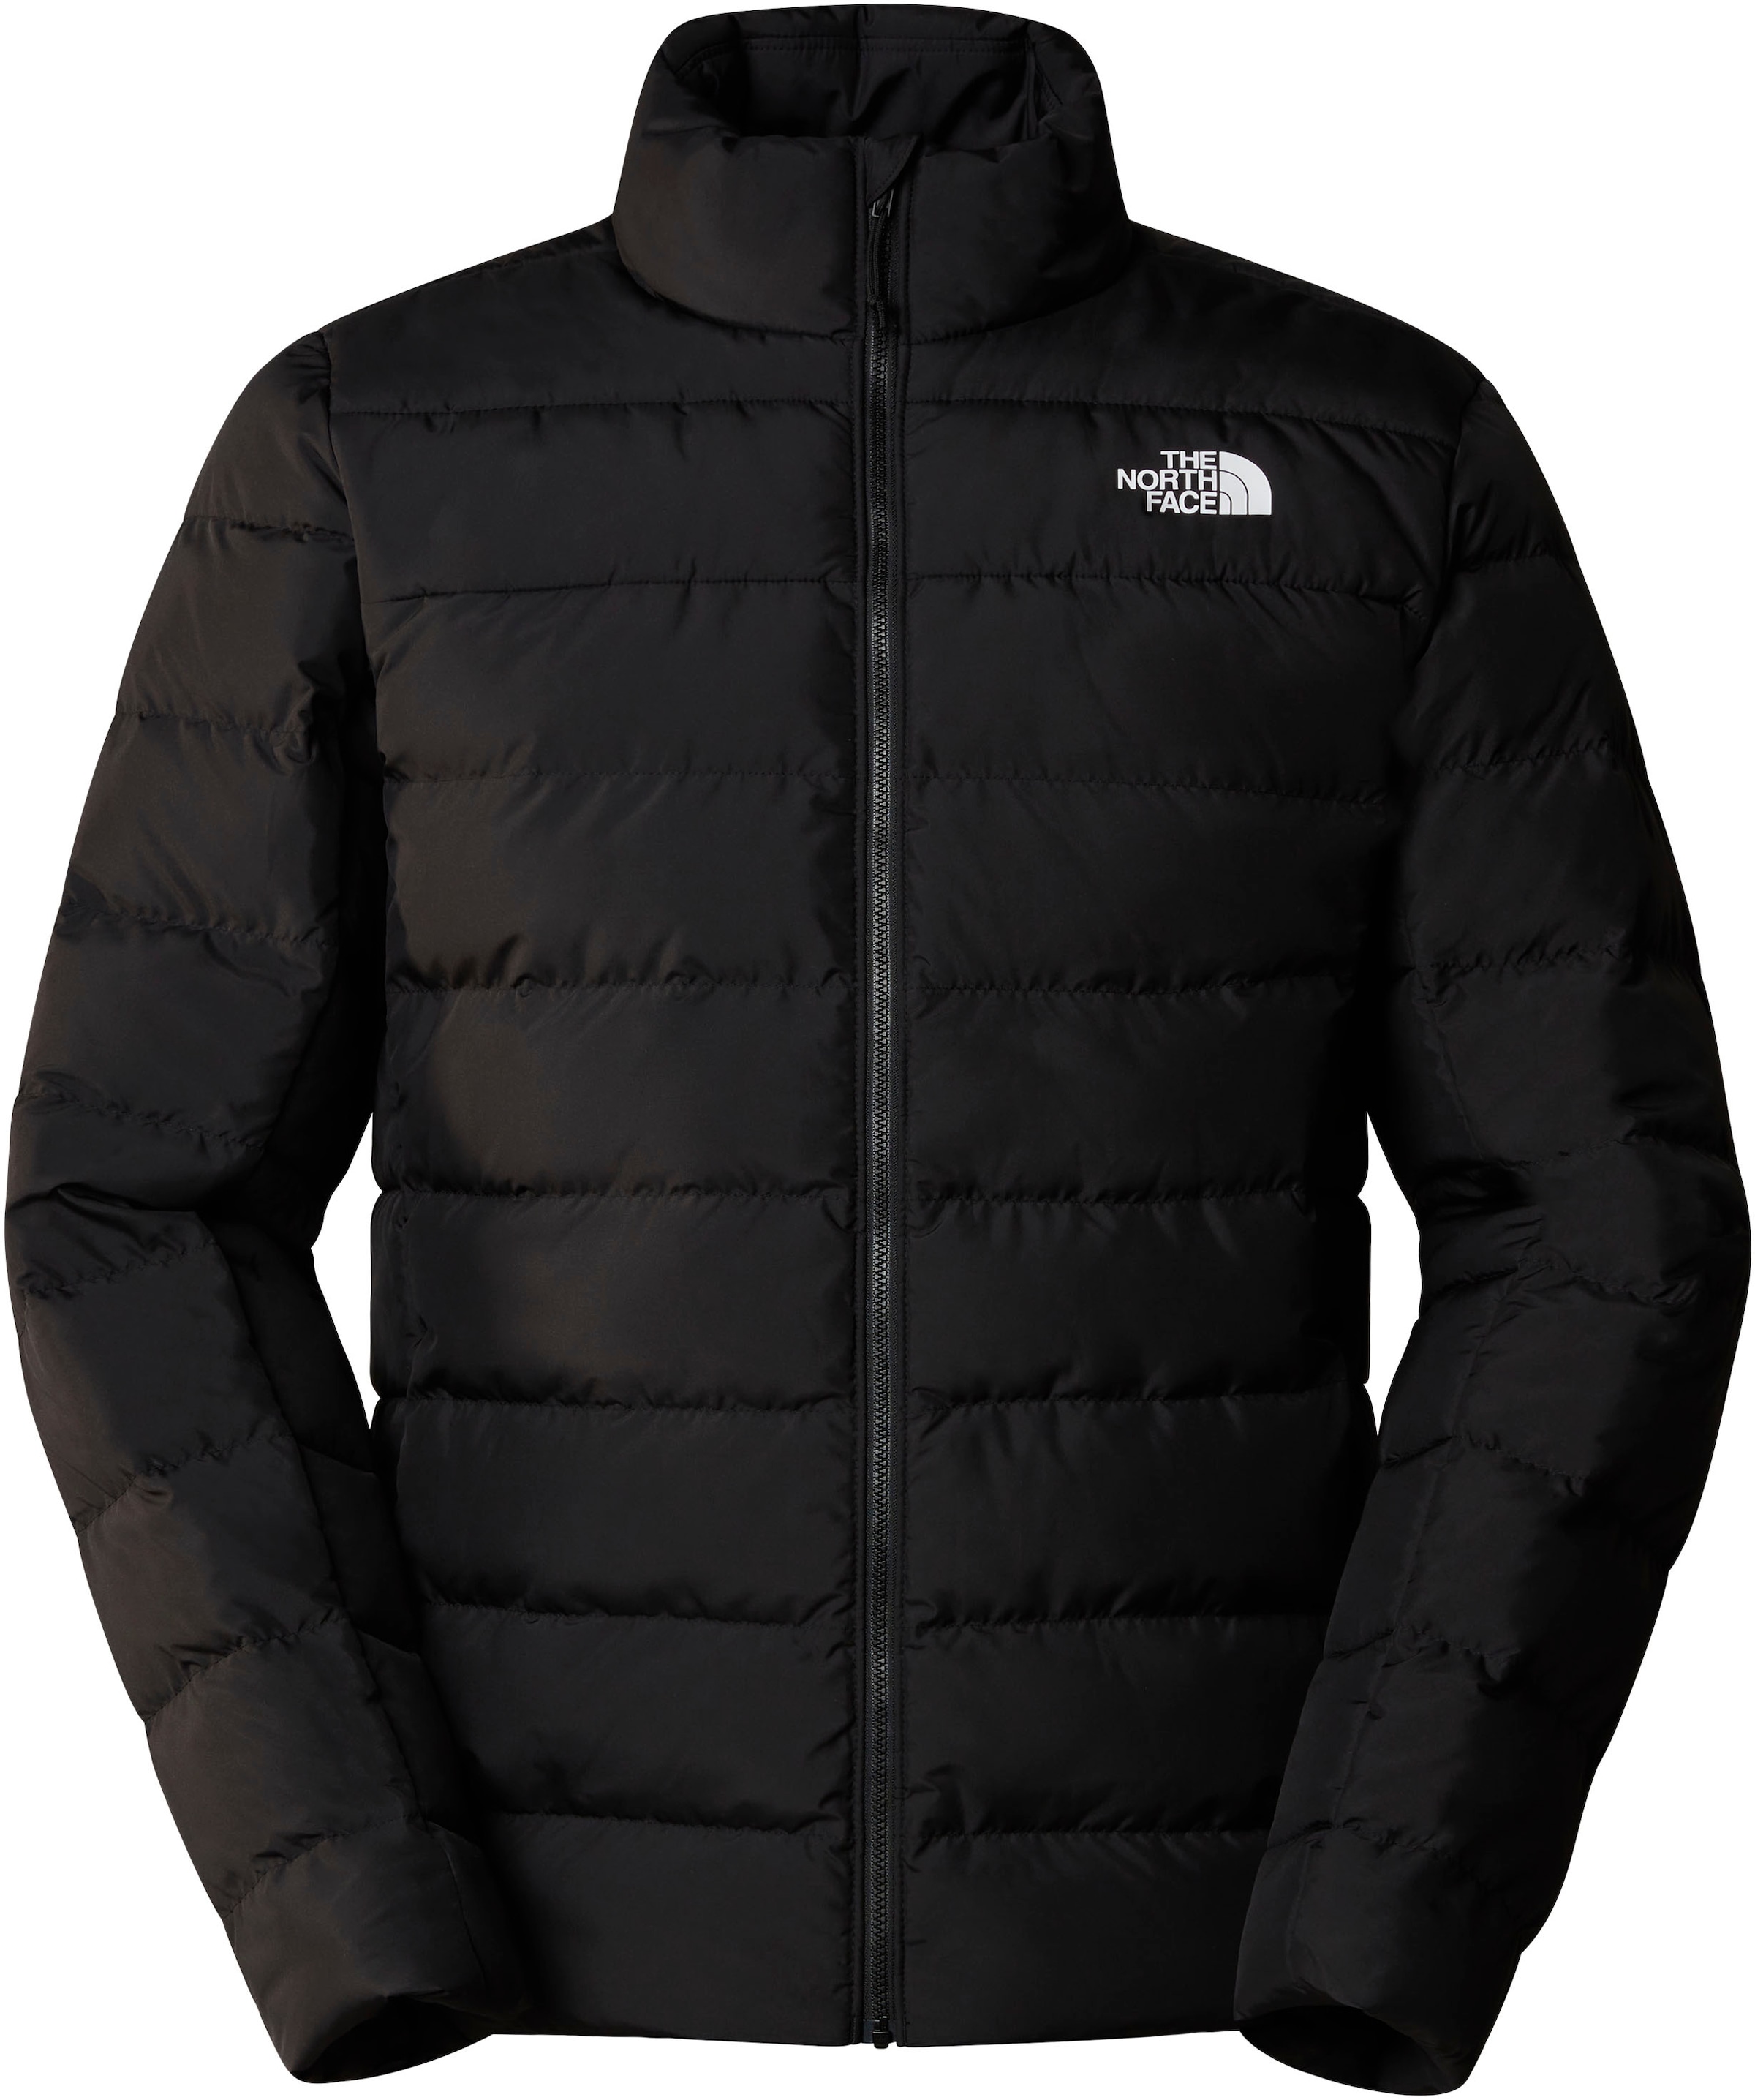 The North Face Jacke Damen günstig kaufen ▻